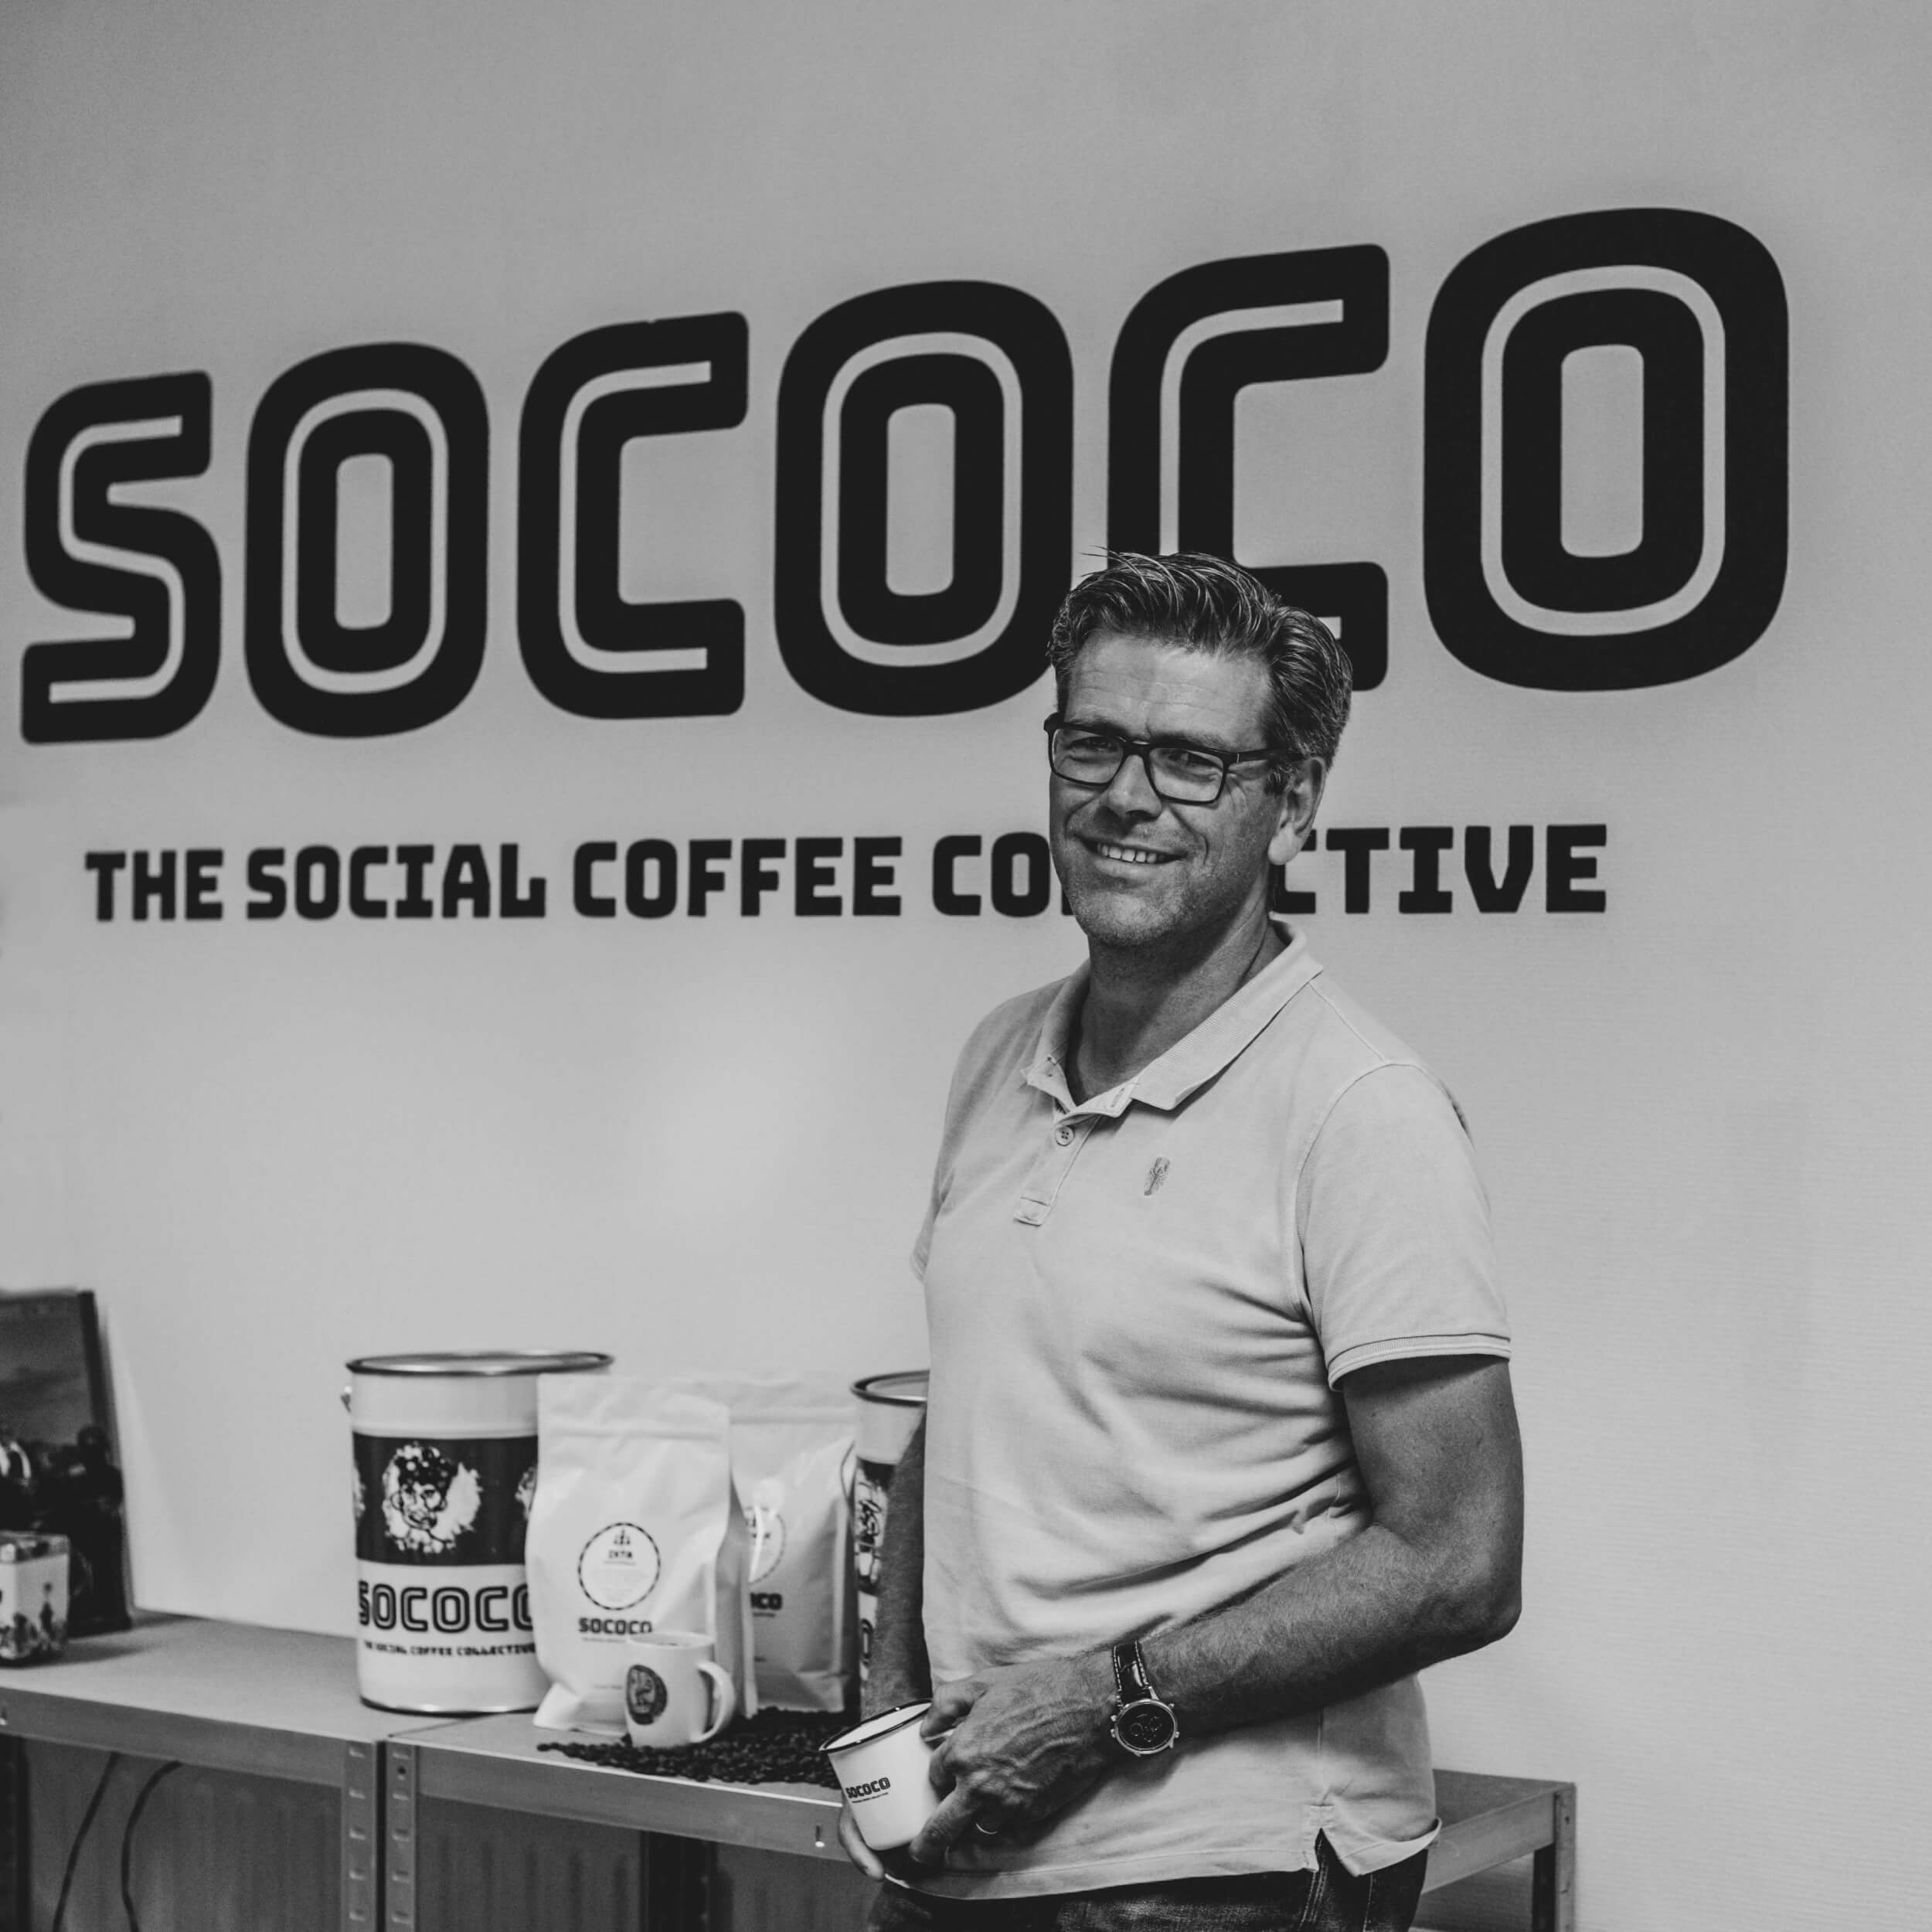 Sococo coffee